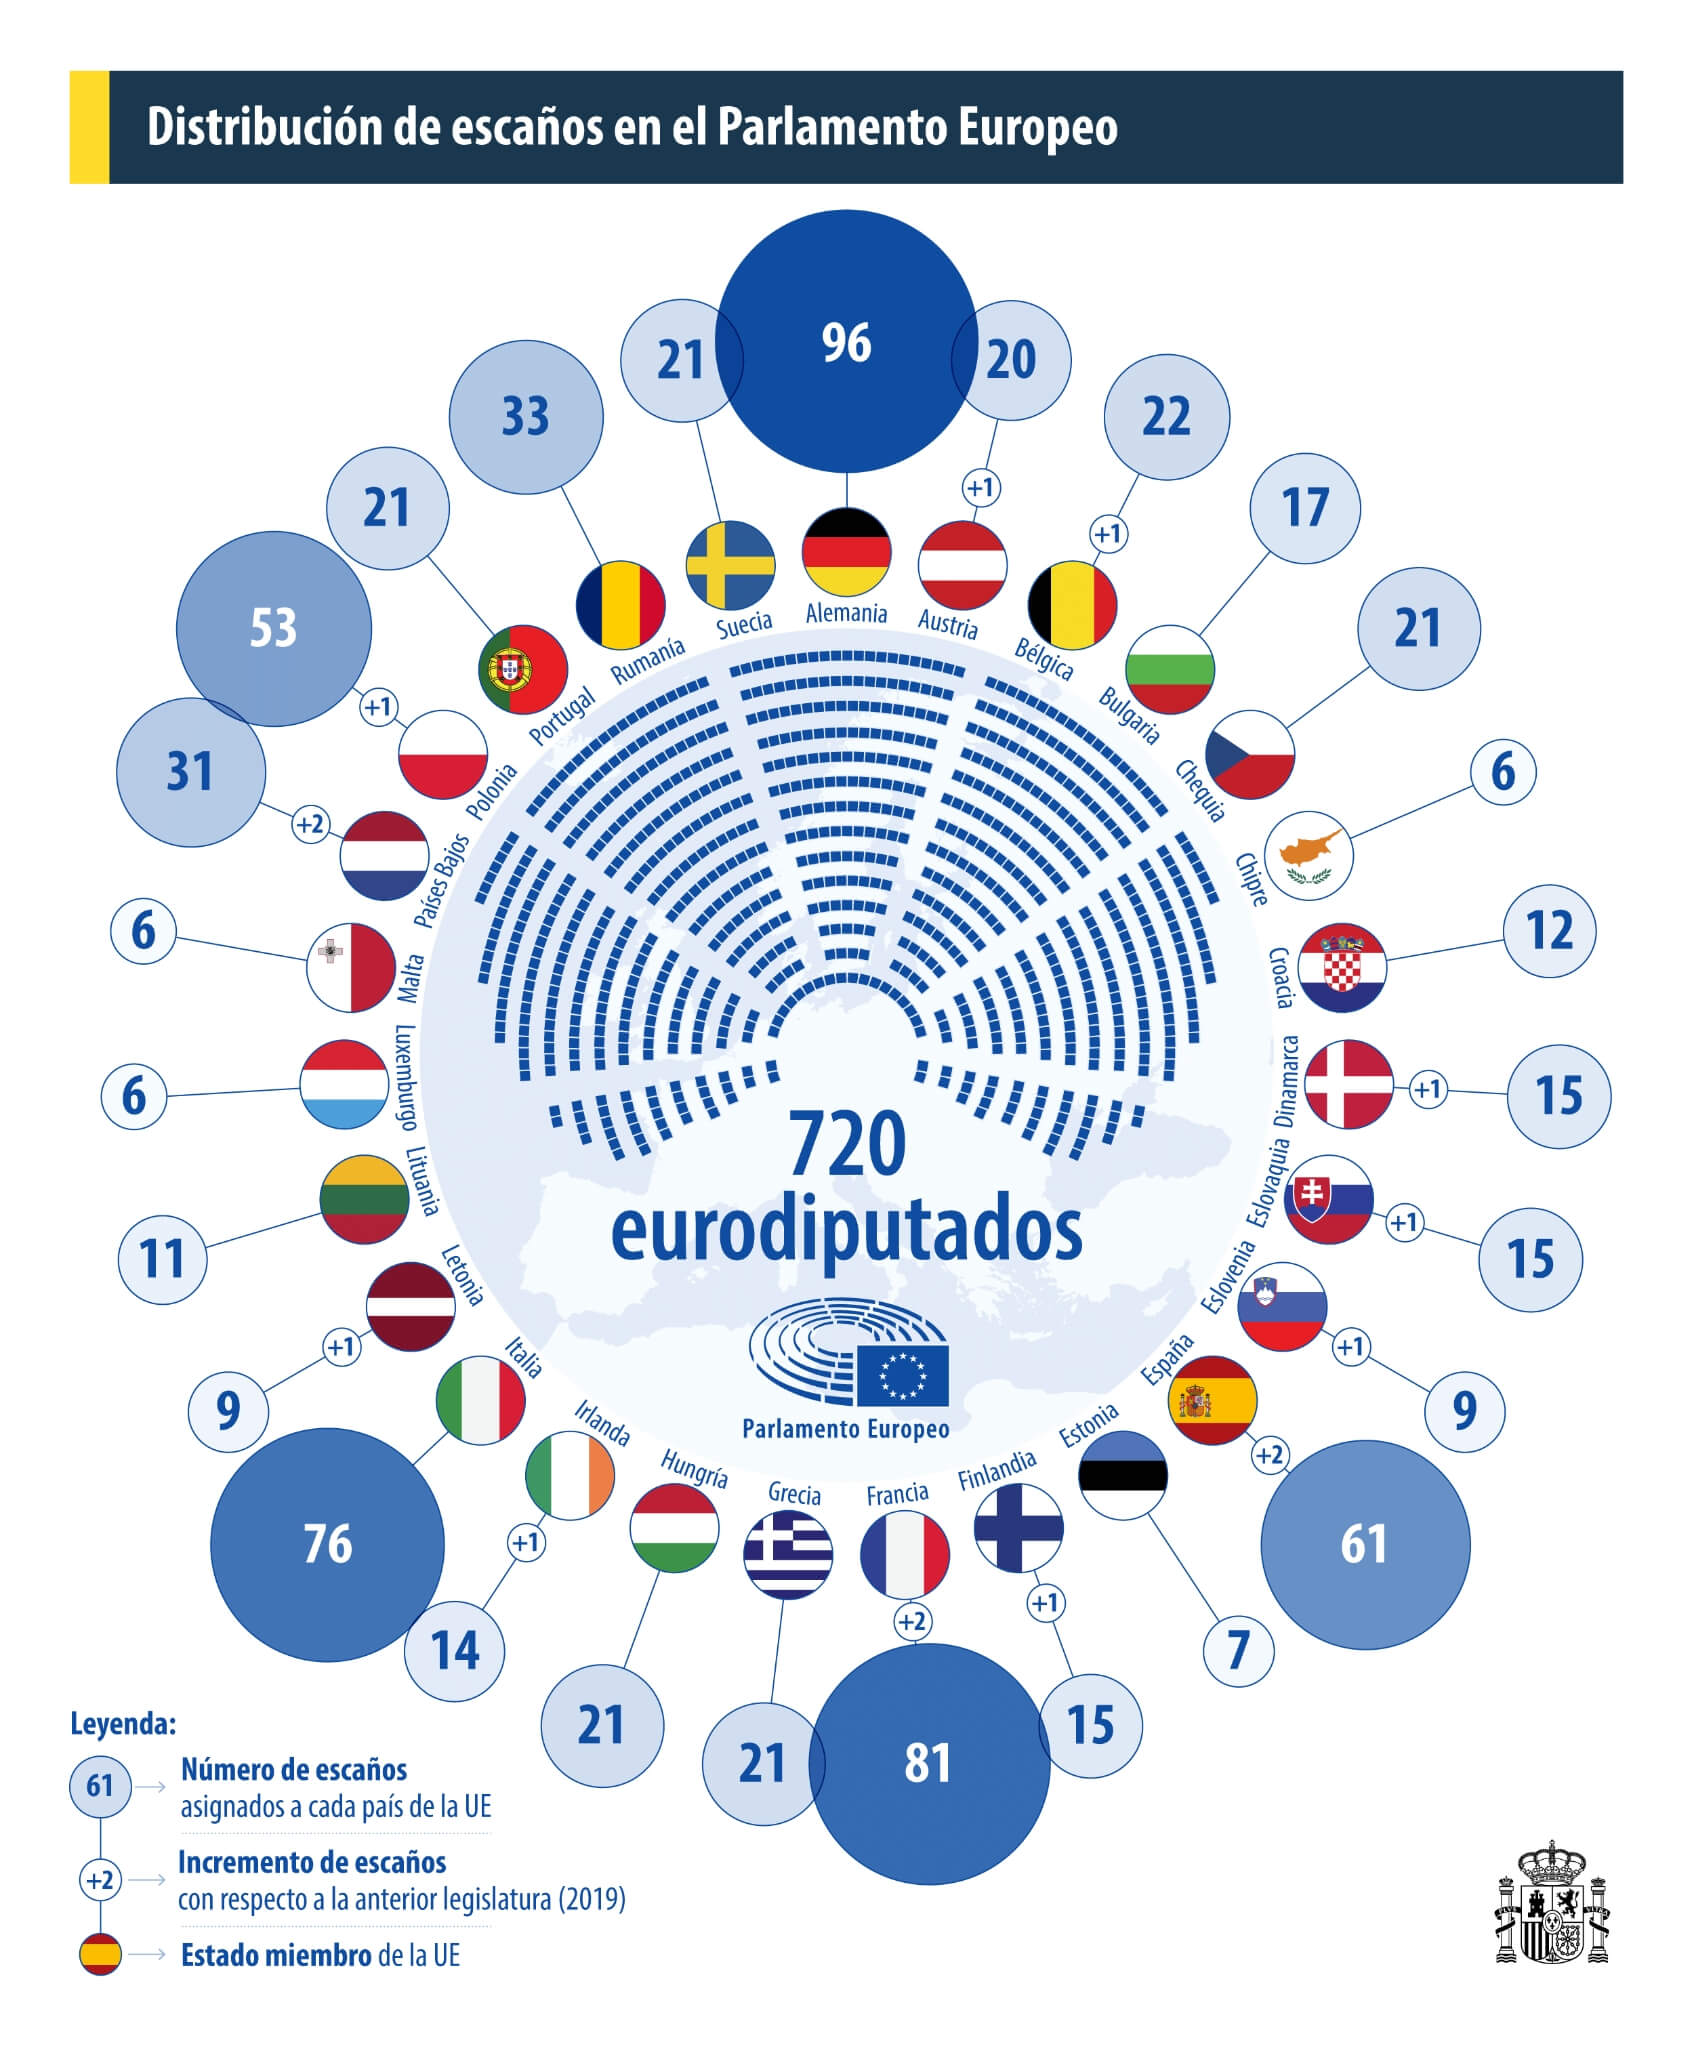 Distribución eurodiputados en el Parlamento Europeo